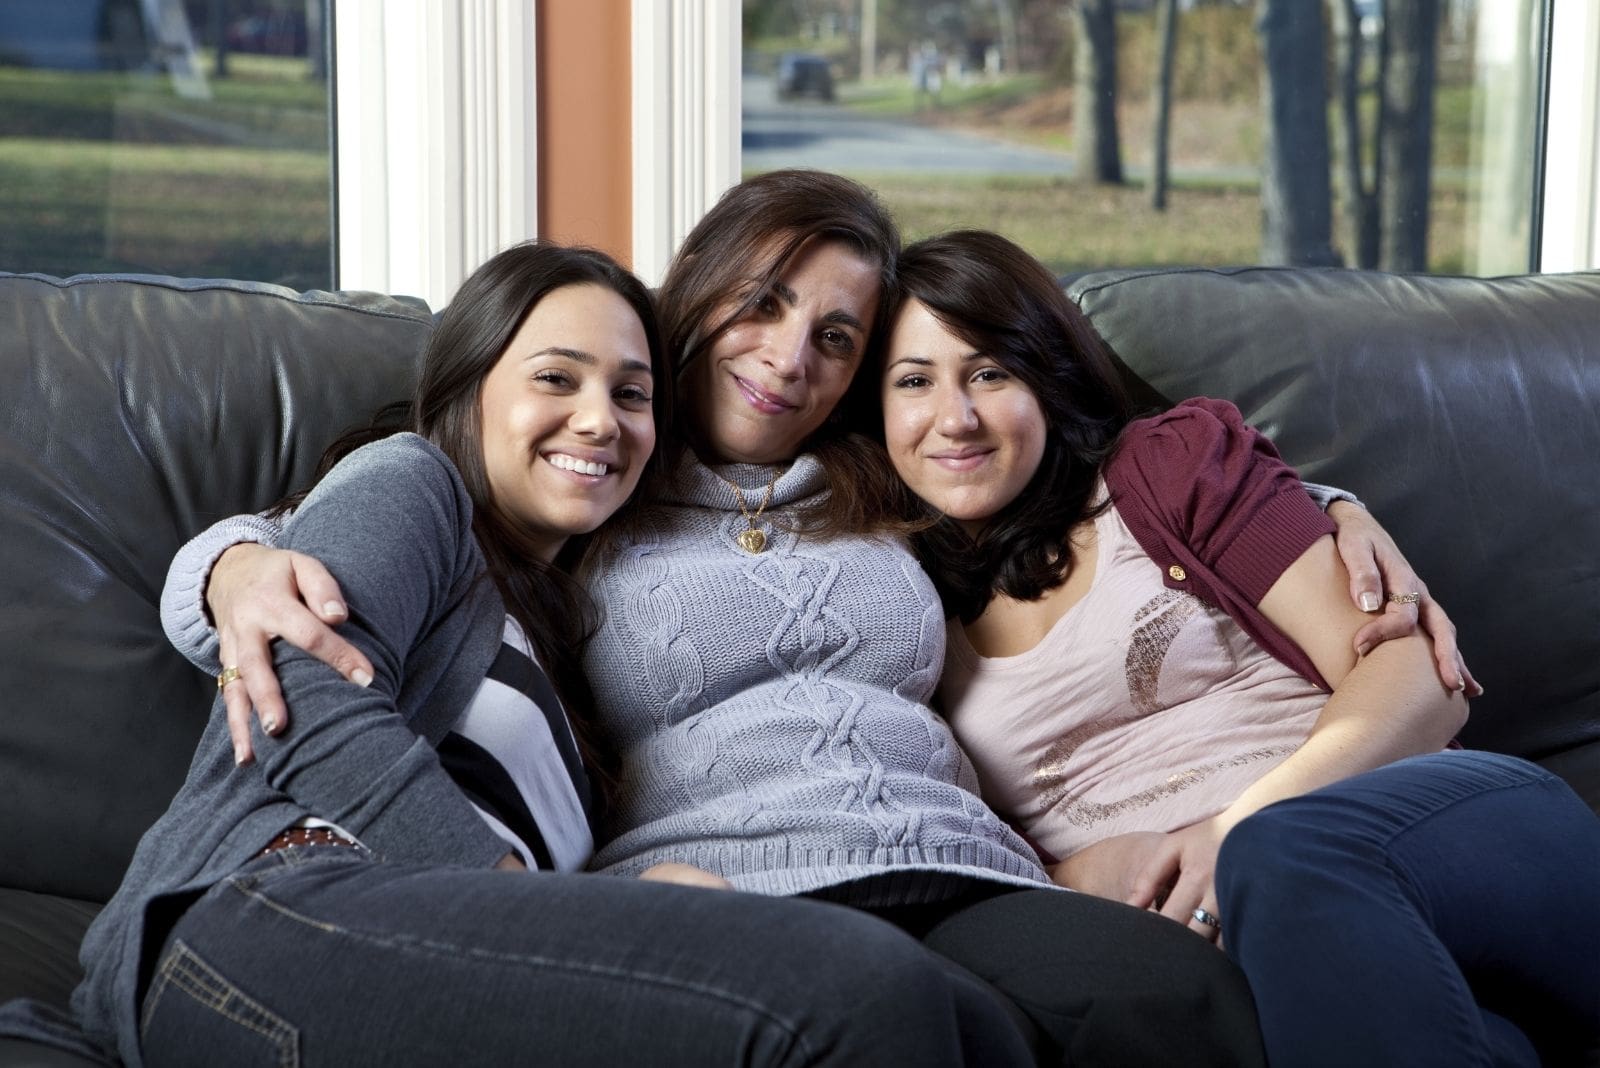 madre y dos hijas sentadas en el sofá del salón